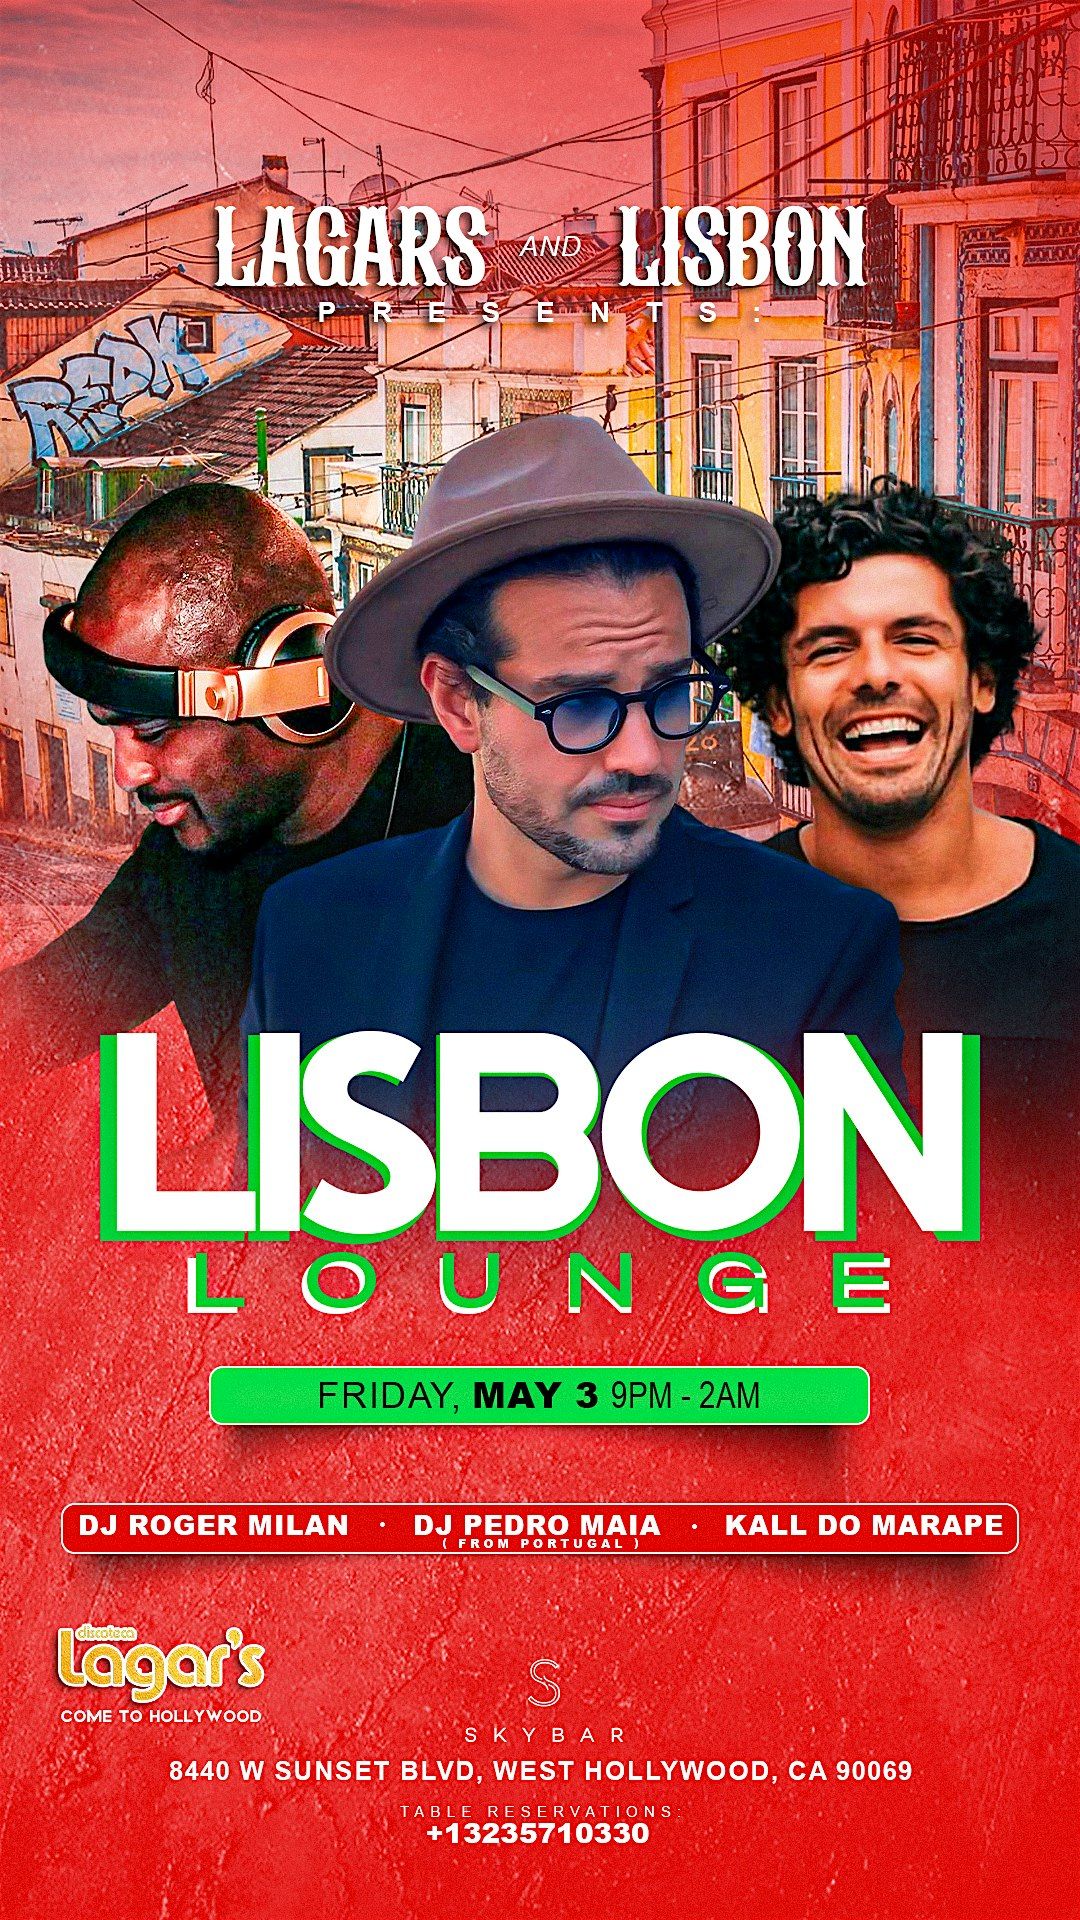 Lisbon Lounge at Skybar Los Angeles